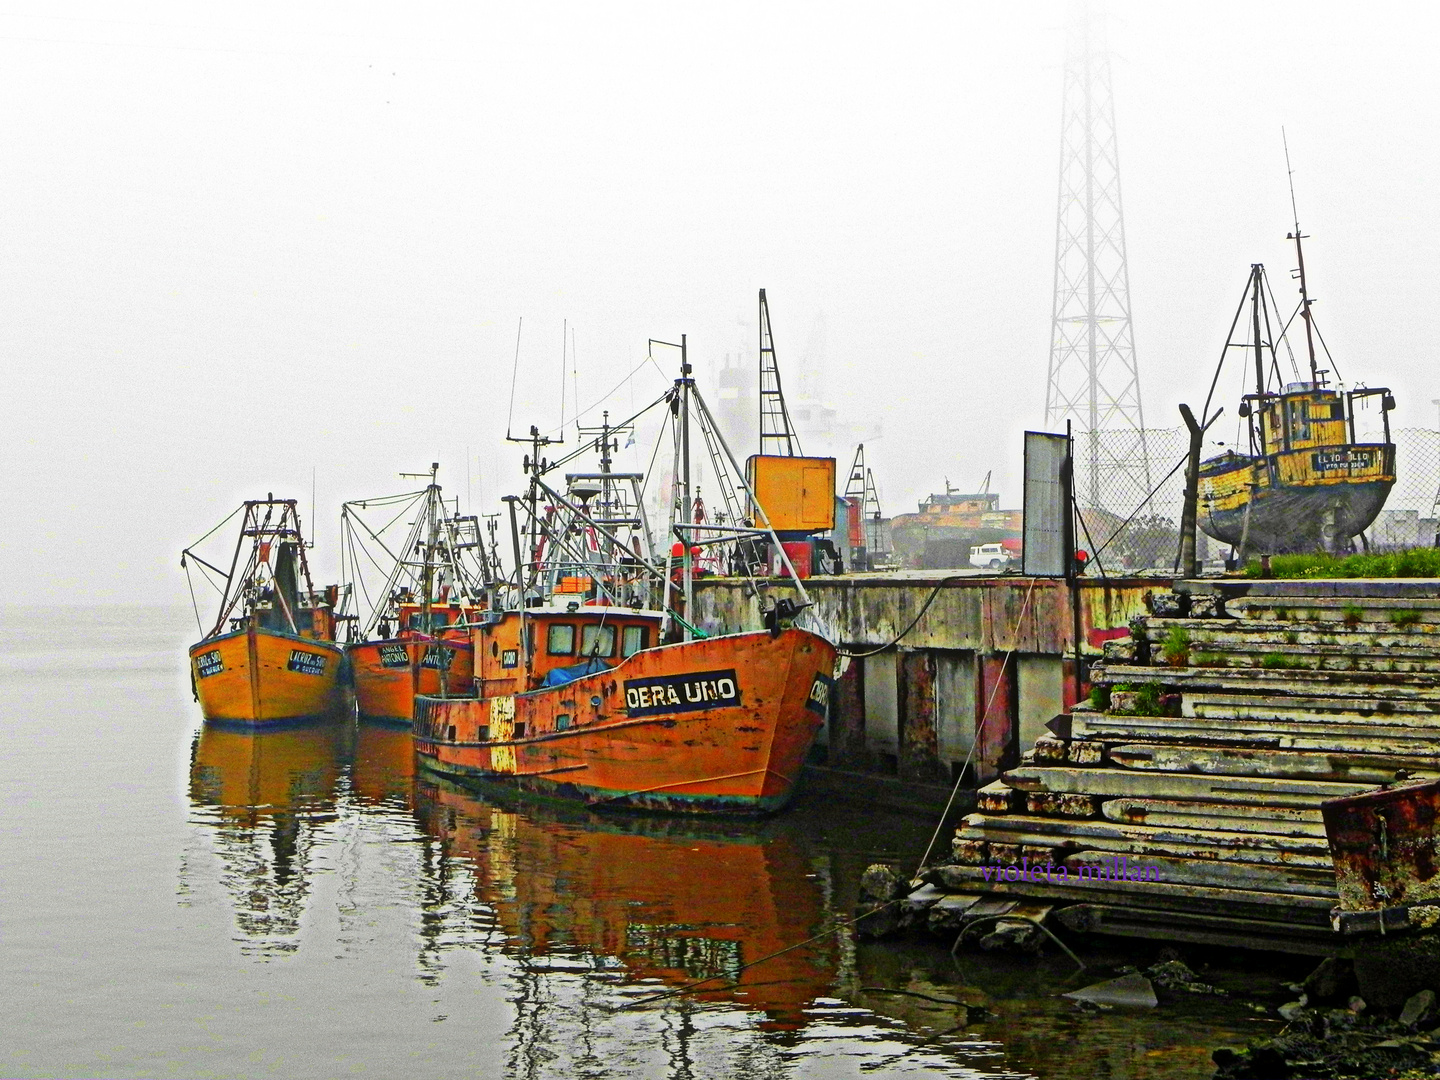 puerto quequen,lanchas pesqueras